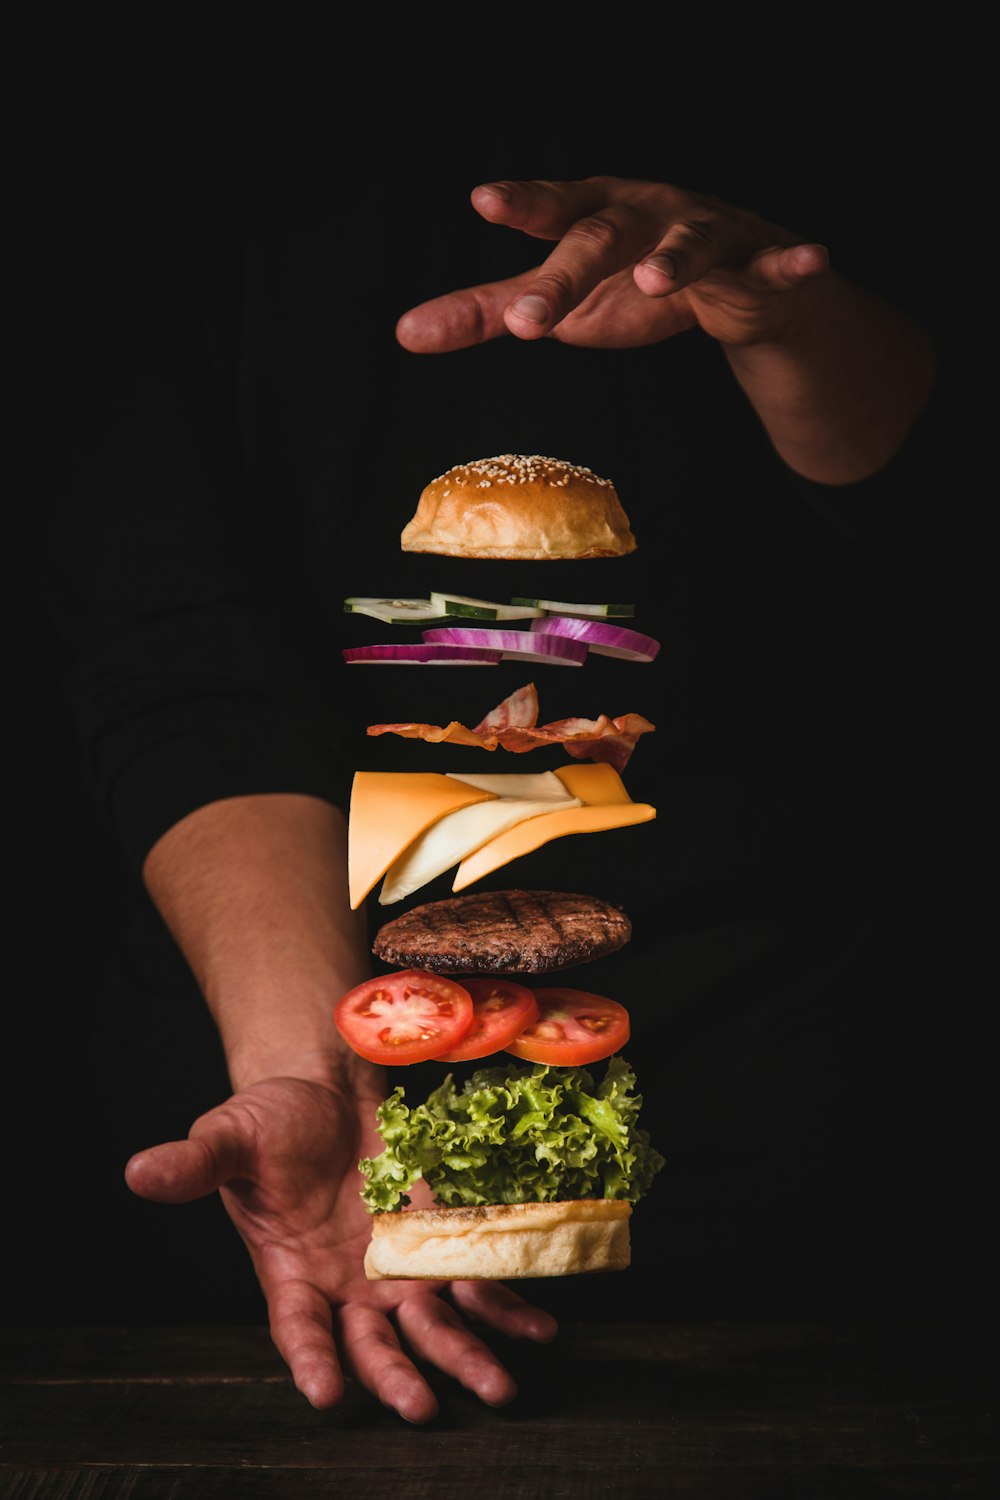 ハンバーガーを手にした男性のタイムラプス写真